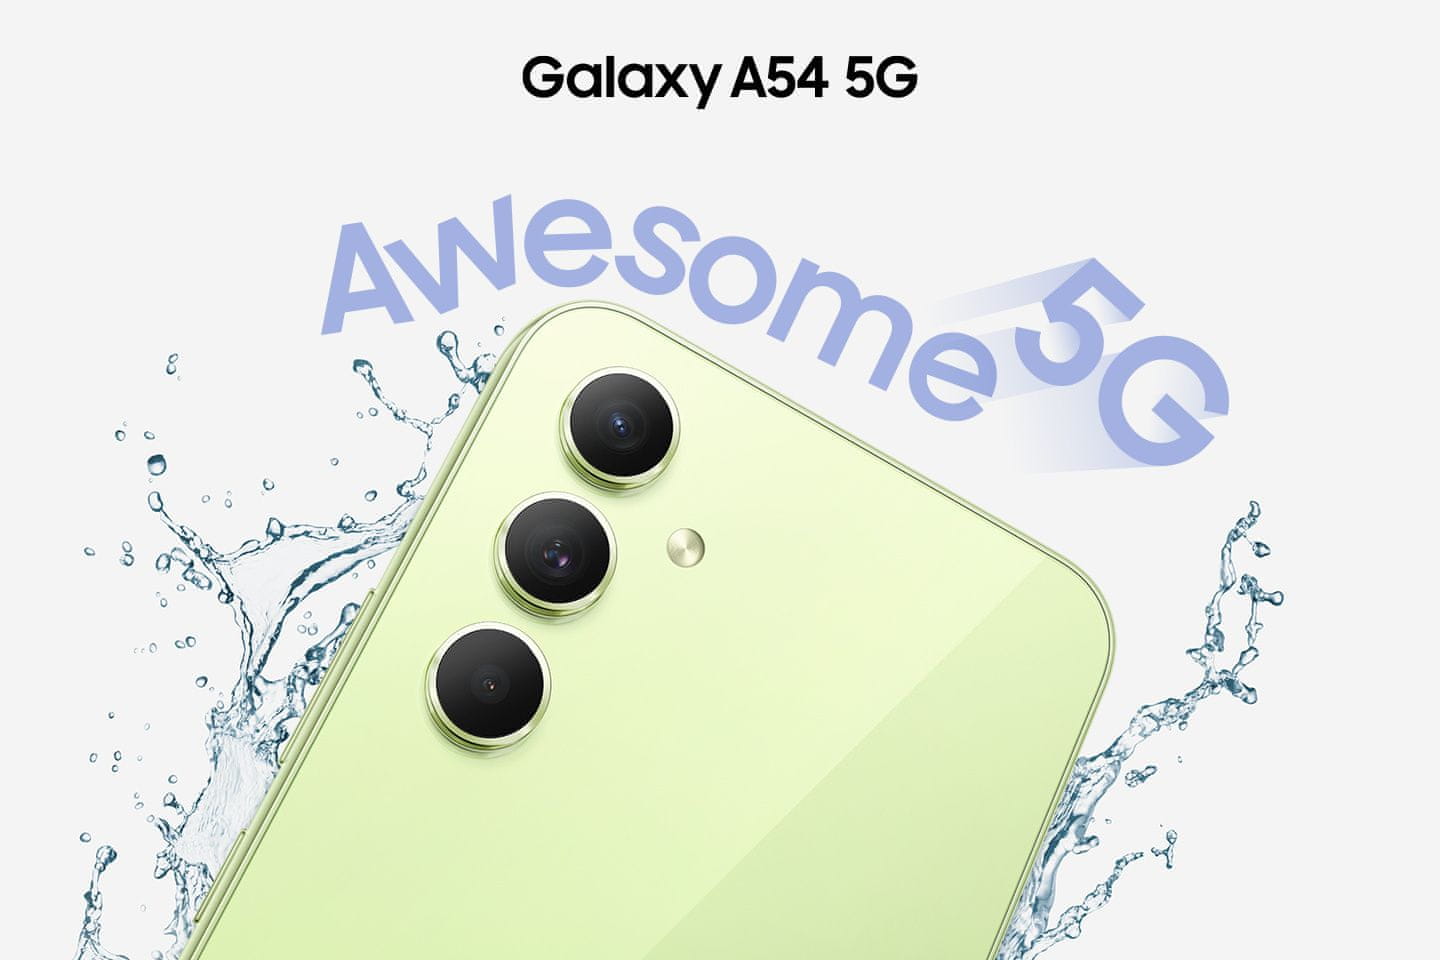 Samsung Galaxy A54 5G, chytrý telefon, vlajková loď 6,5palcový displej AMOLED obnovovací frekvence stabilizace obrazu čtyři fotoaparáty nejrychlejší 5G připojení 5G internet podpora nejrychlejšího připojení Gorilla Glass IP67 NFC